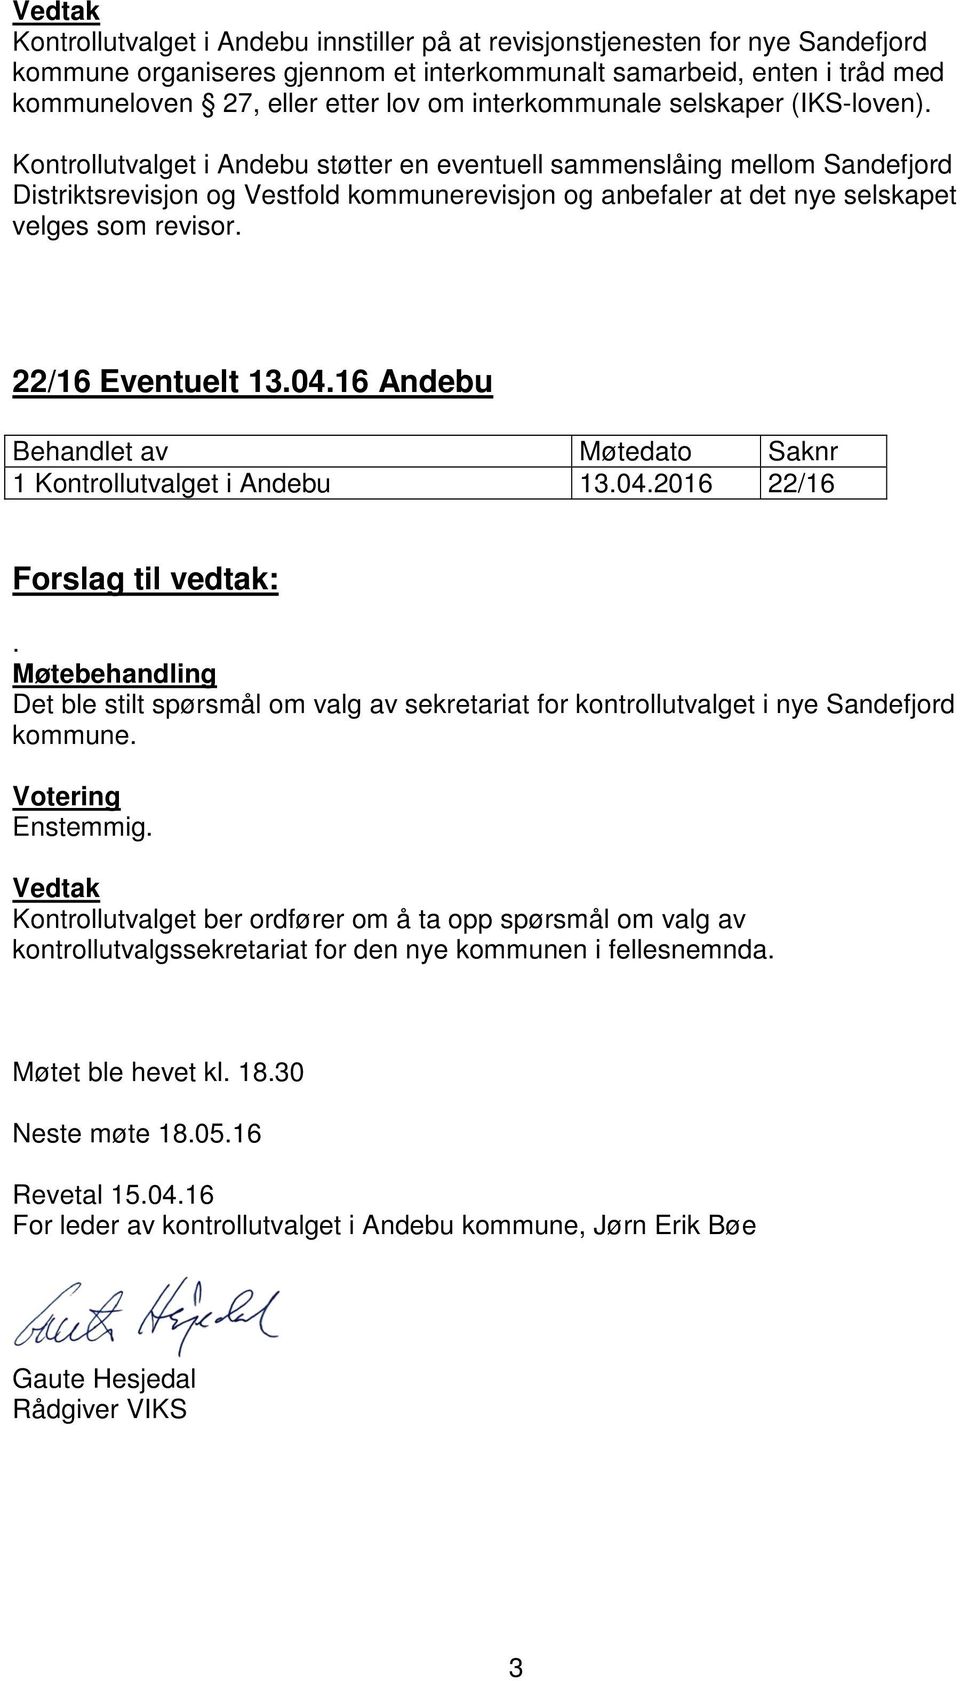 Kontrollutvalget i Andebu støtter en eventuell sammenslåing mellom Sandefjord Distriktsrevisjon og Vestfold kommunerevisjon og anbefaler at det nye selskapet velges som revisor. 22/16 Eventuelt 13.04.